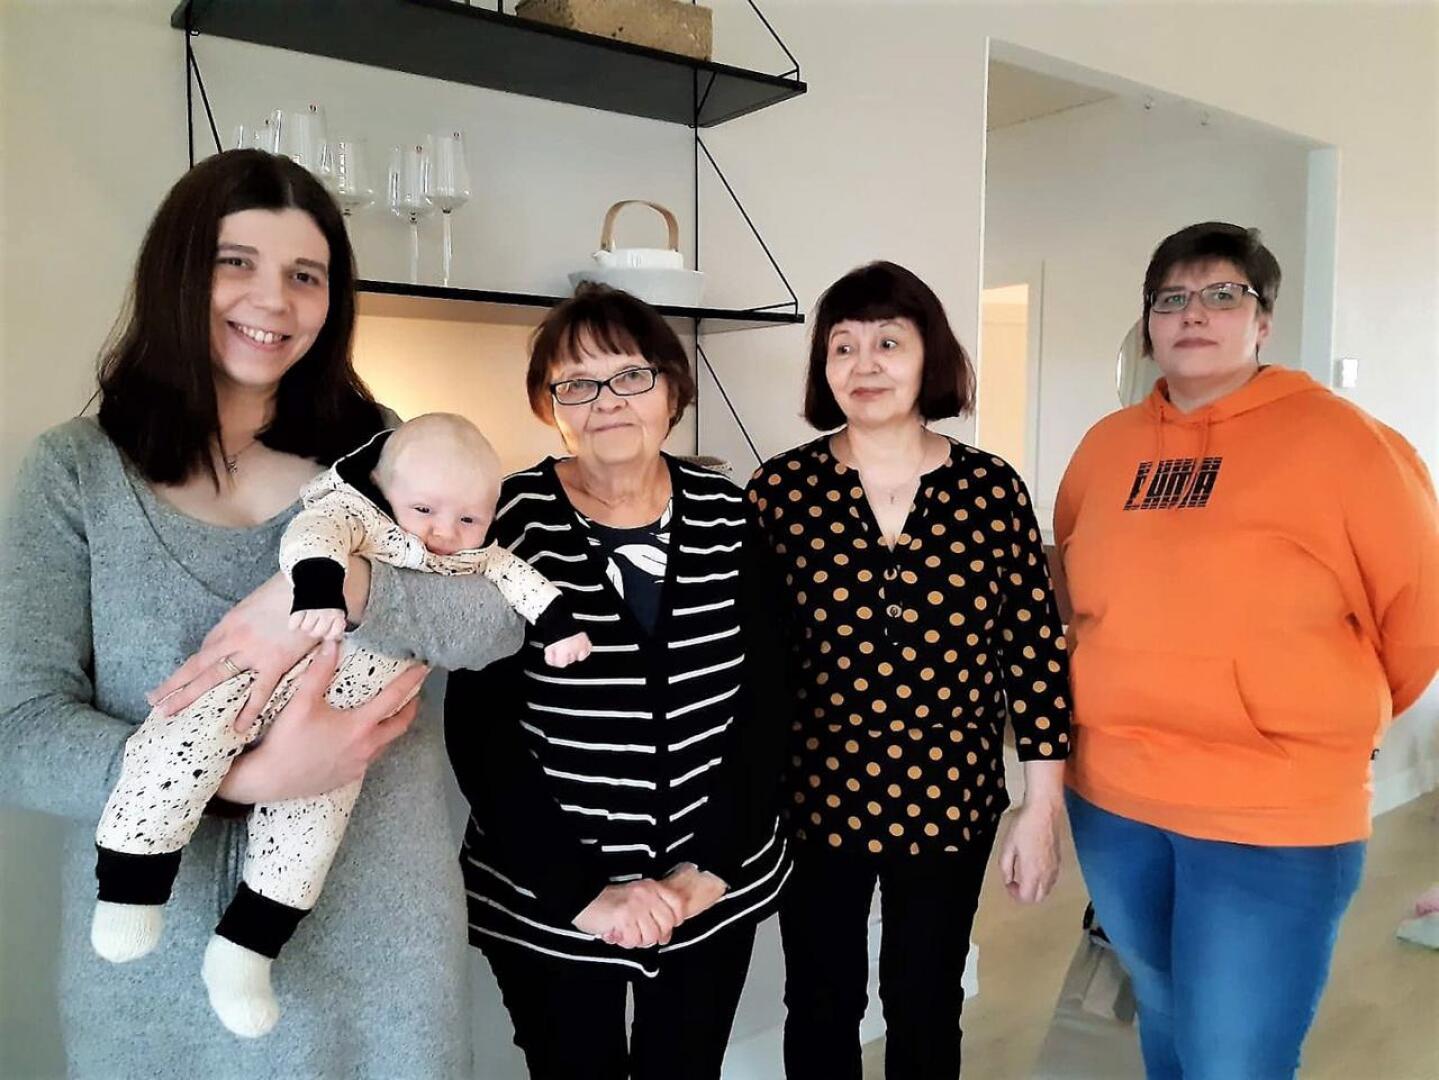 Jonna-äidin sylissä olevaa Lempolan perheen pienokaista onnittelemassa kävivät Anna Tammelin MLL Ylivieskan paikallisyhdistyksestä sekä isoäidin neliöitä peittoon virkanneet Aili Jylkkä ja Airi Krapu Tuokiotuvalta.